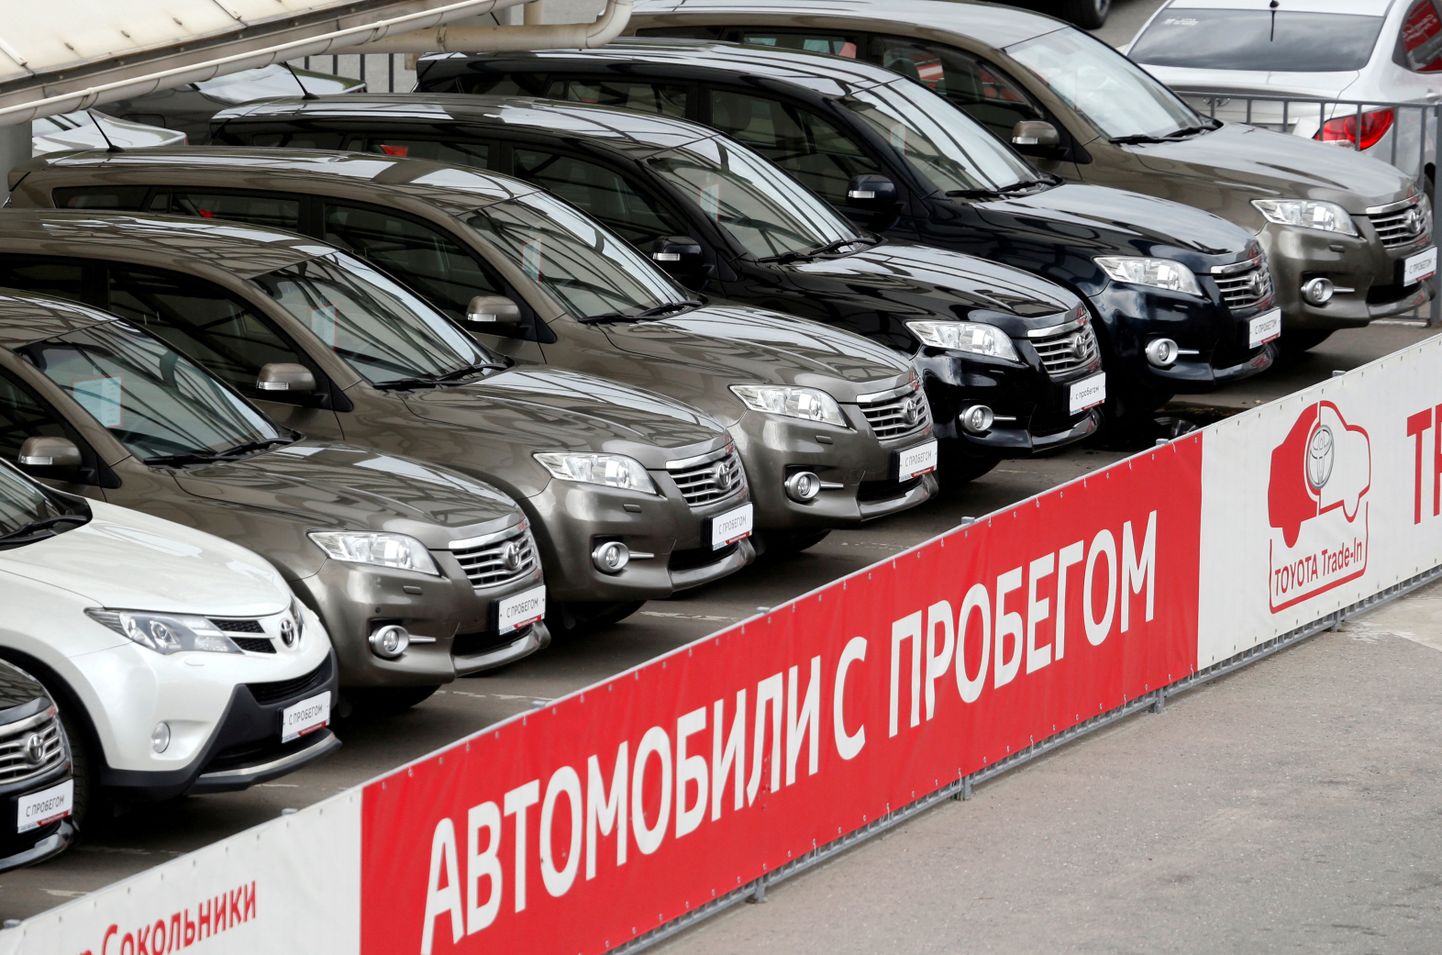 Moskvas müügil olevad kasutatud Toyota autod.